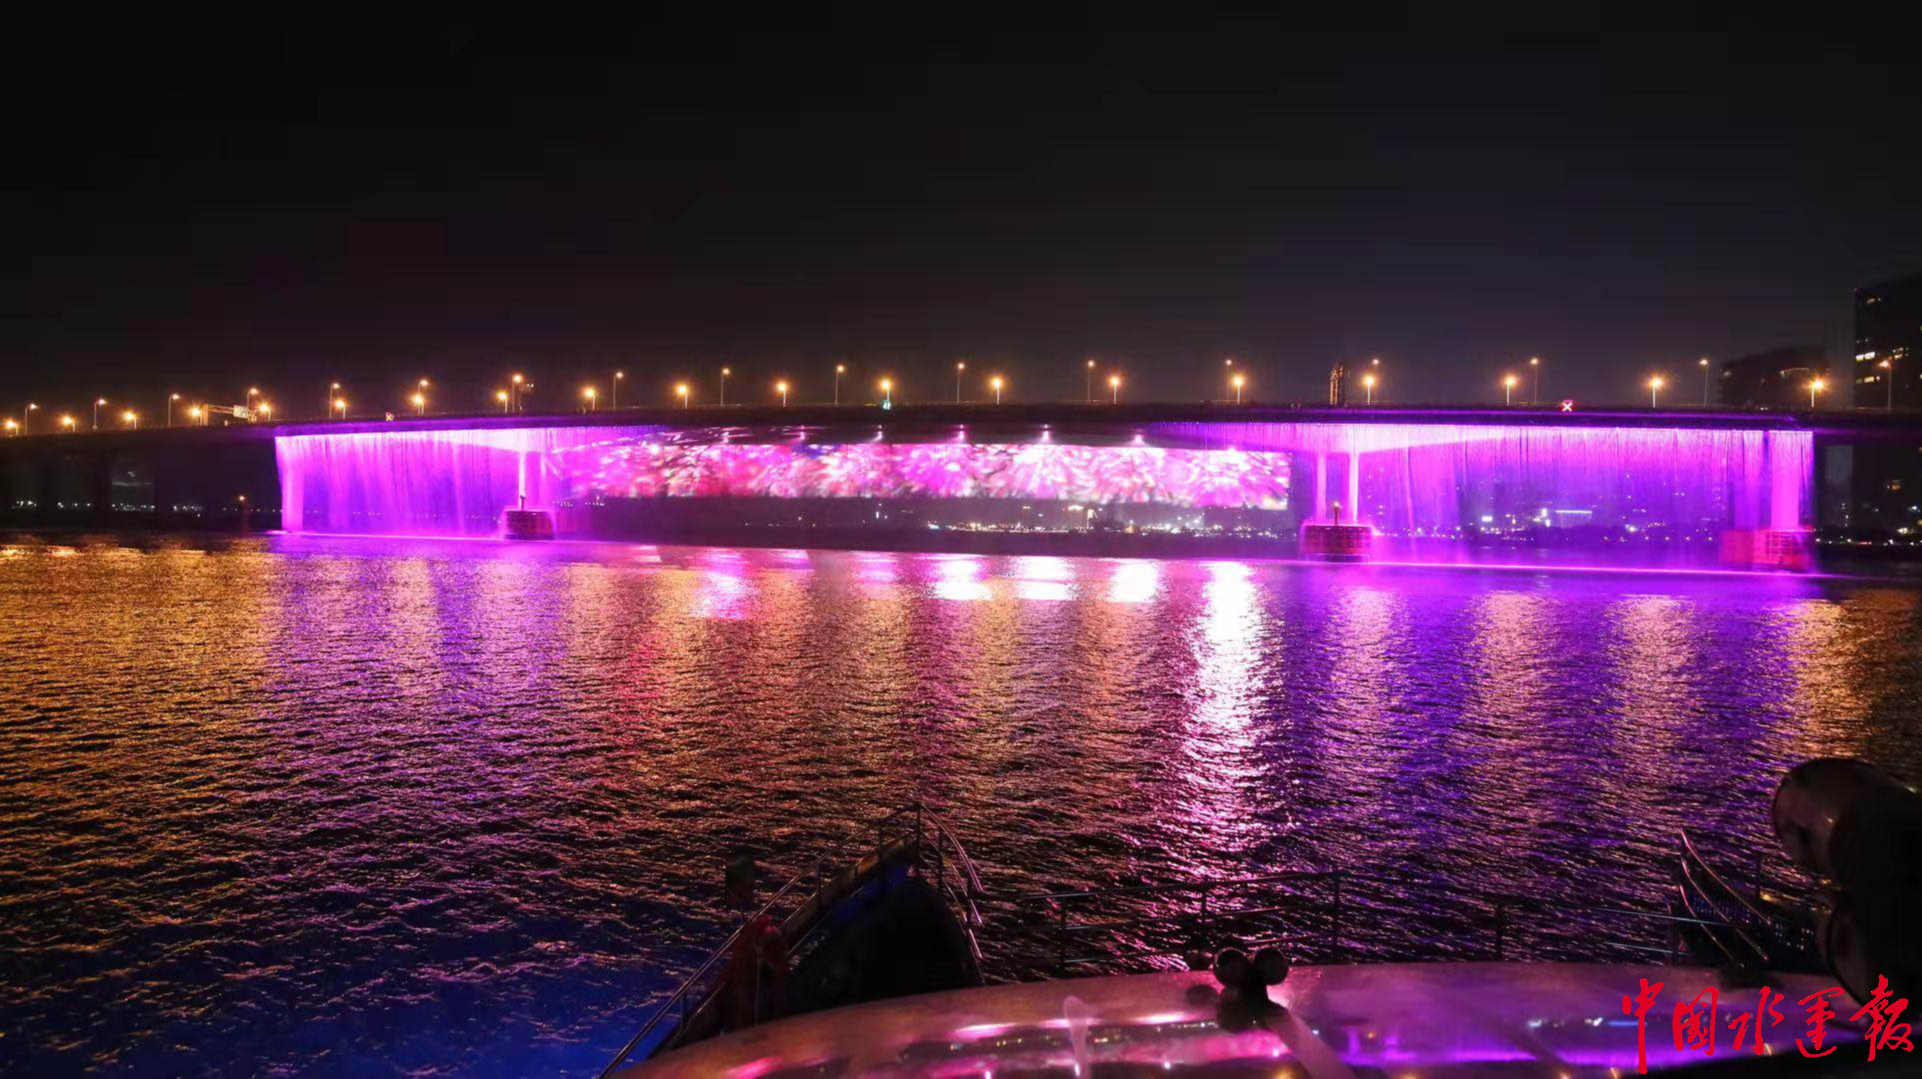 瓯江夜游又有新景观水秀项目点亮桥下美景